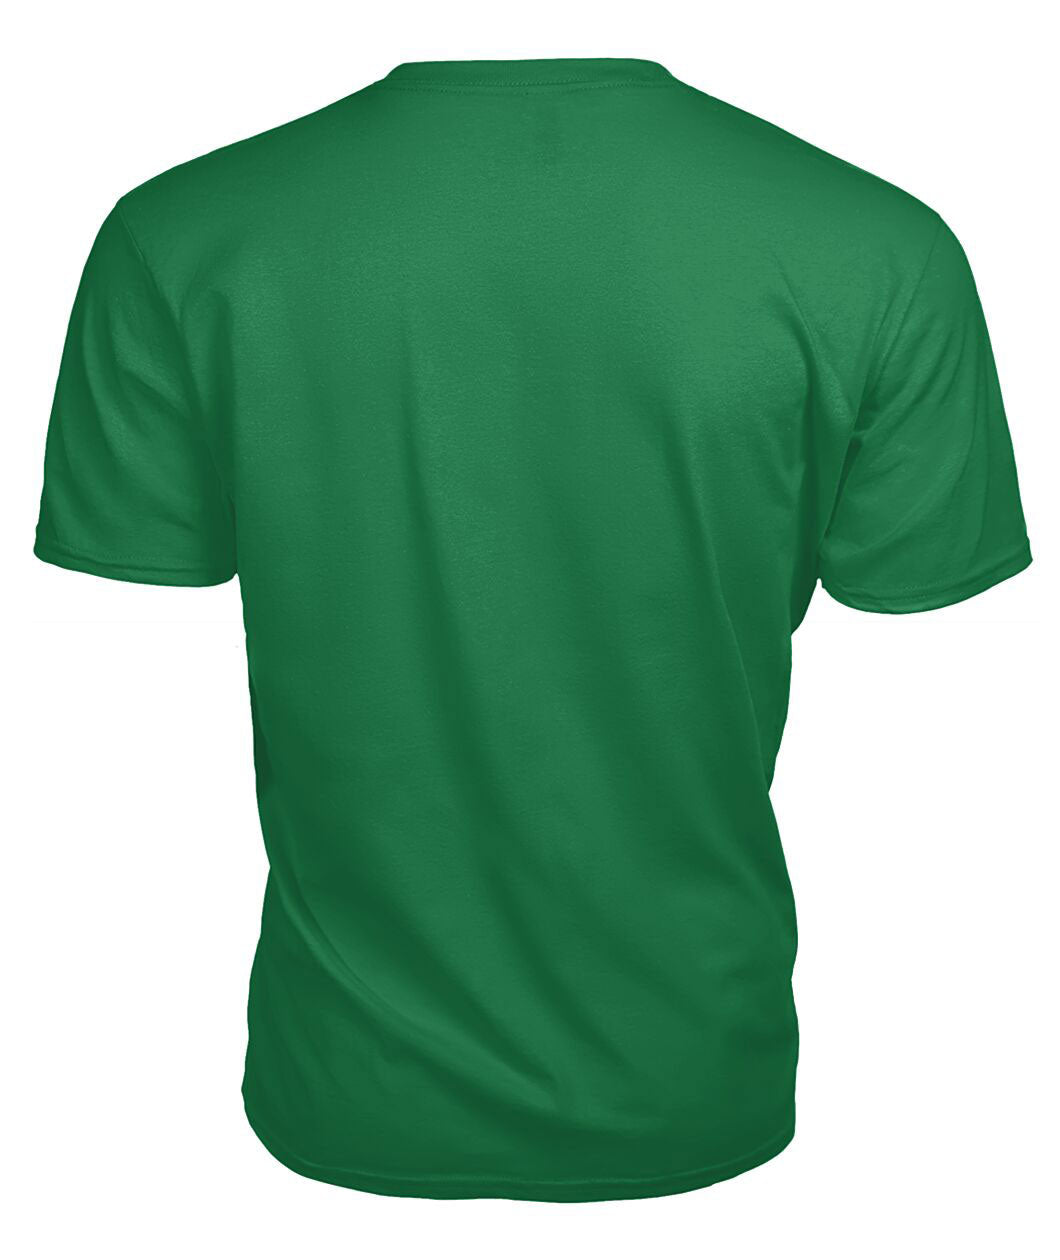 Kinloch Tartan Crest 2D T-shirt - Blood Runs Through My Veins Style